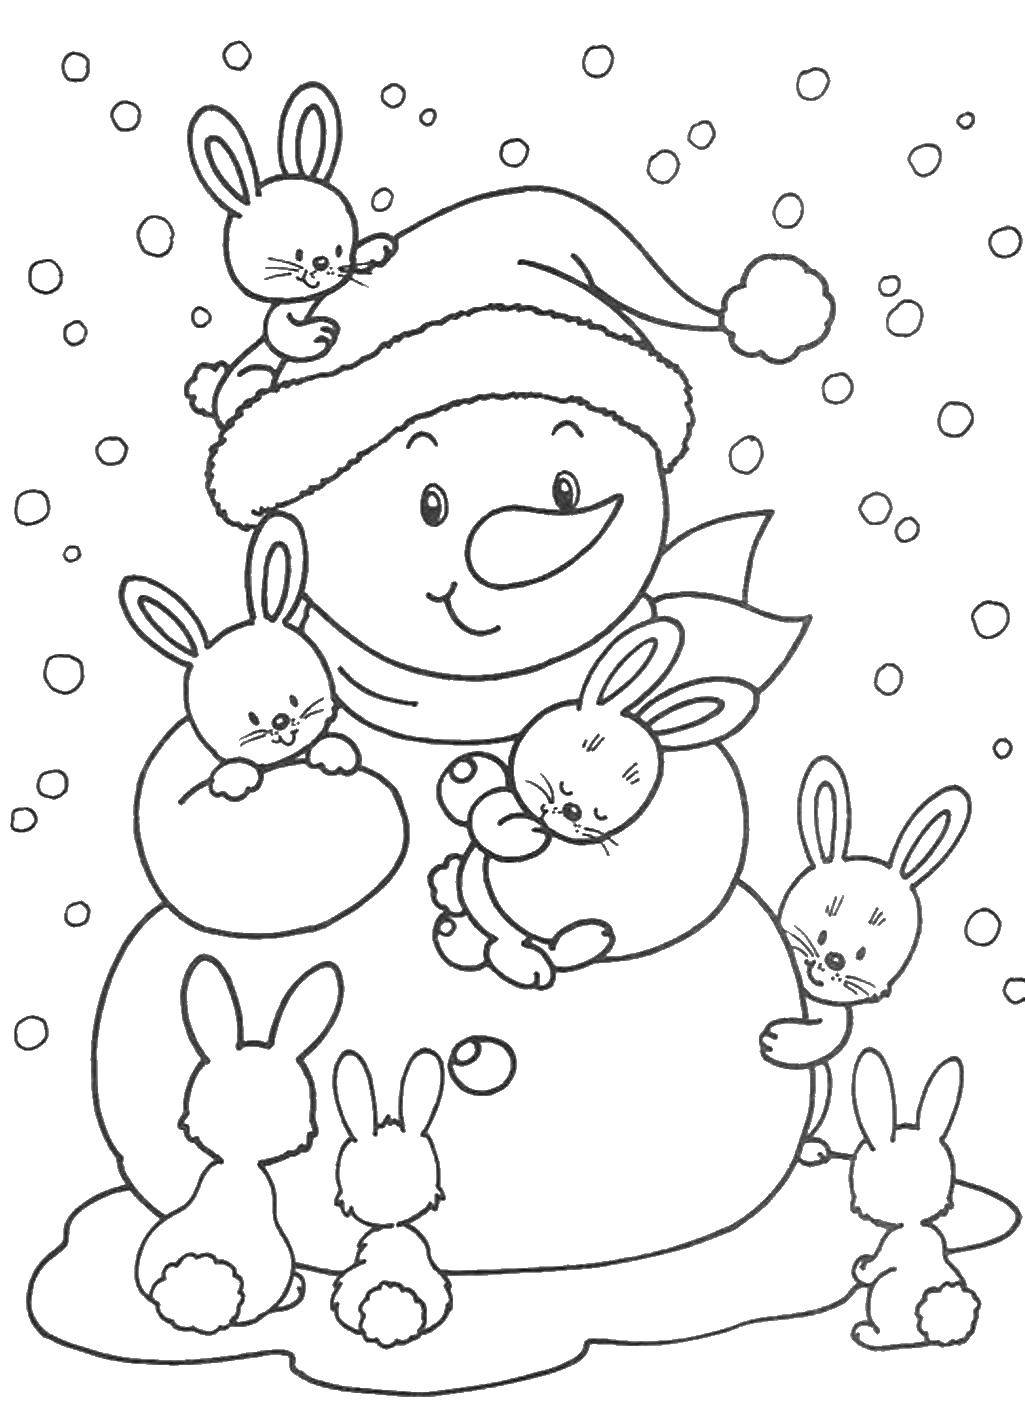 Розмальовки  Зайчики навколо сніговика. Завантажити розмальовку зима, сніговик, зайчики.  Роздрукувати ,розмальовки зима,